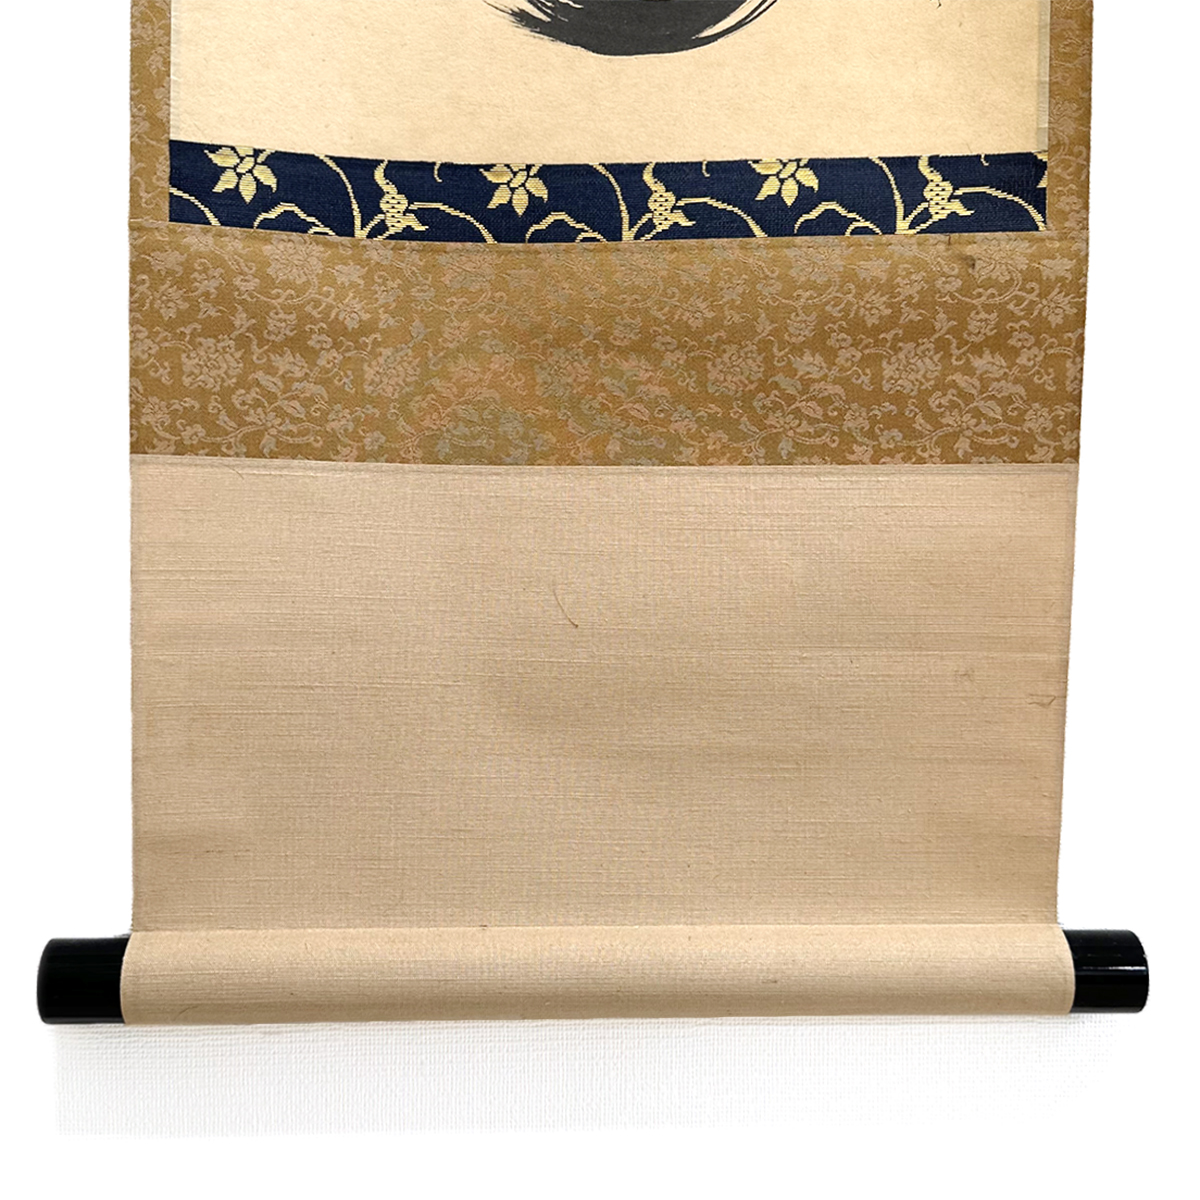 日本買付 【茶道具】大徳寺黄梅院 小林太玄和尚筆 『松樹千年翠』軸397